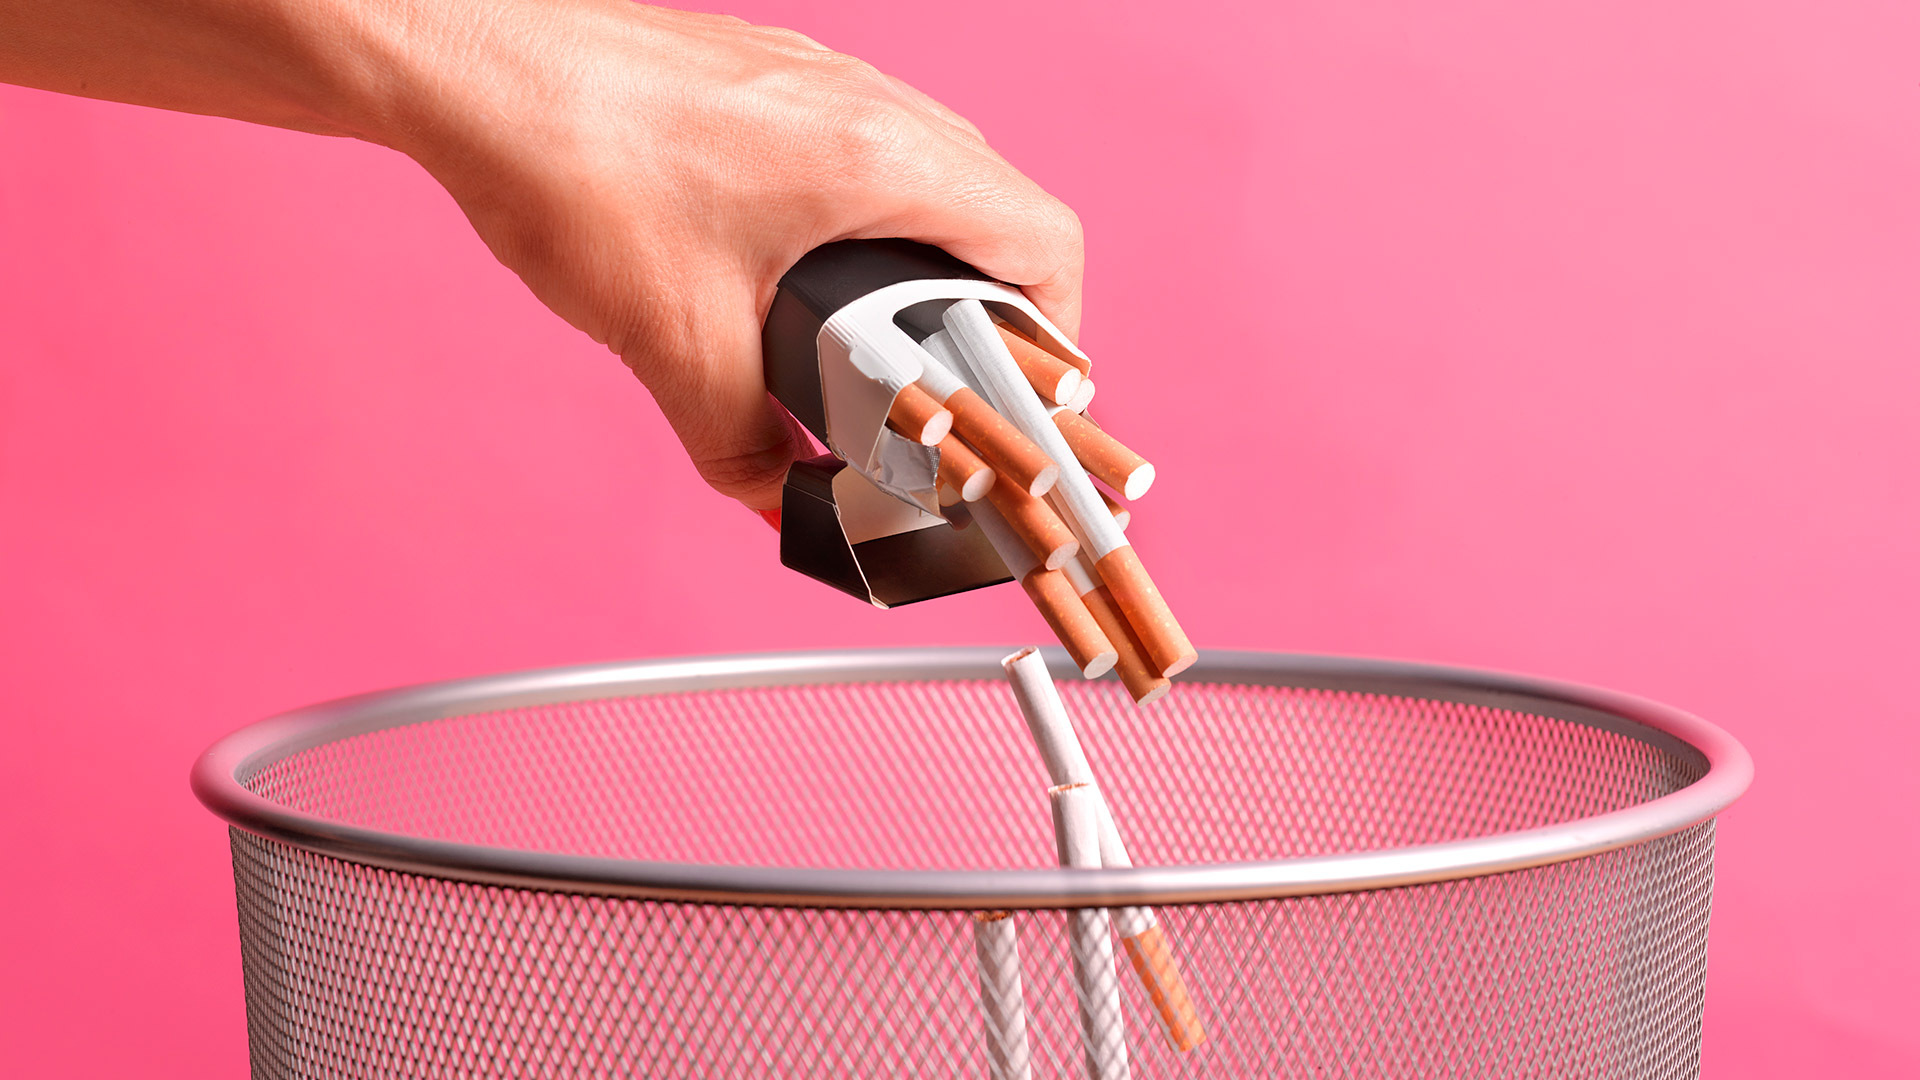 La Asociación Argentina de Tabacología (ASAT) afirma que “el humo del tabaco contiene más de 7.000 componentes, de los cuales unos 70 son sustancias que producen cáncer” / Getty